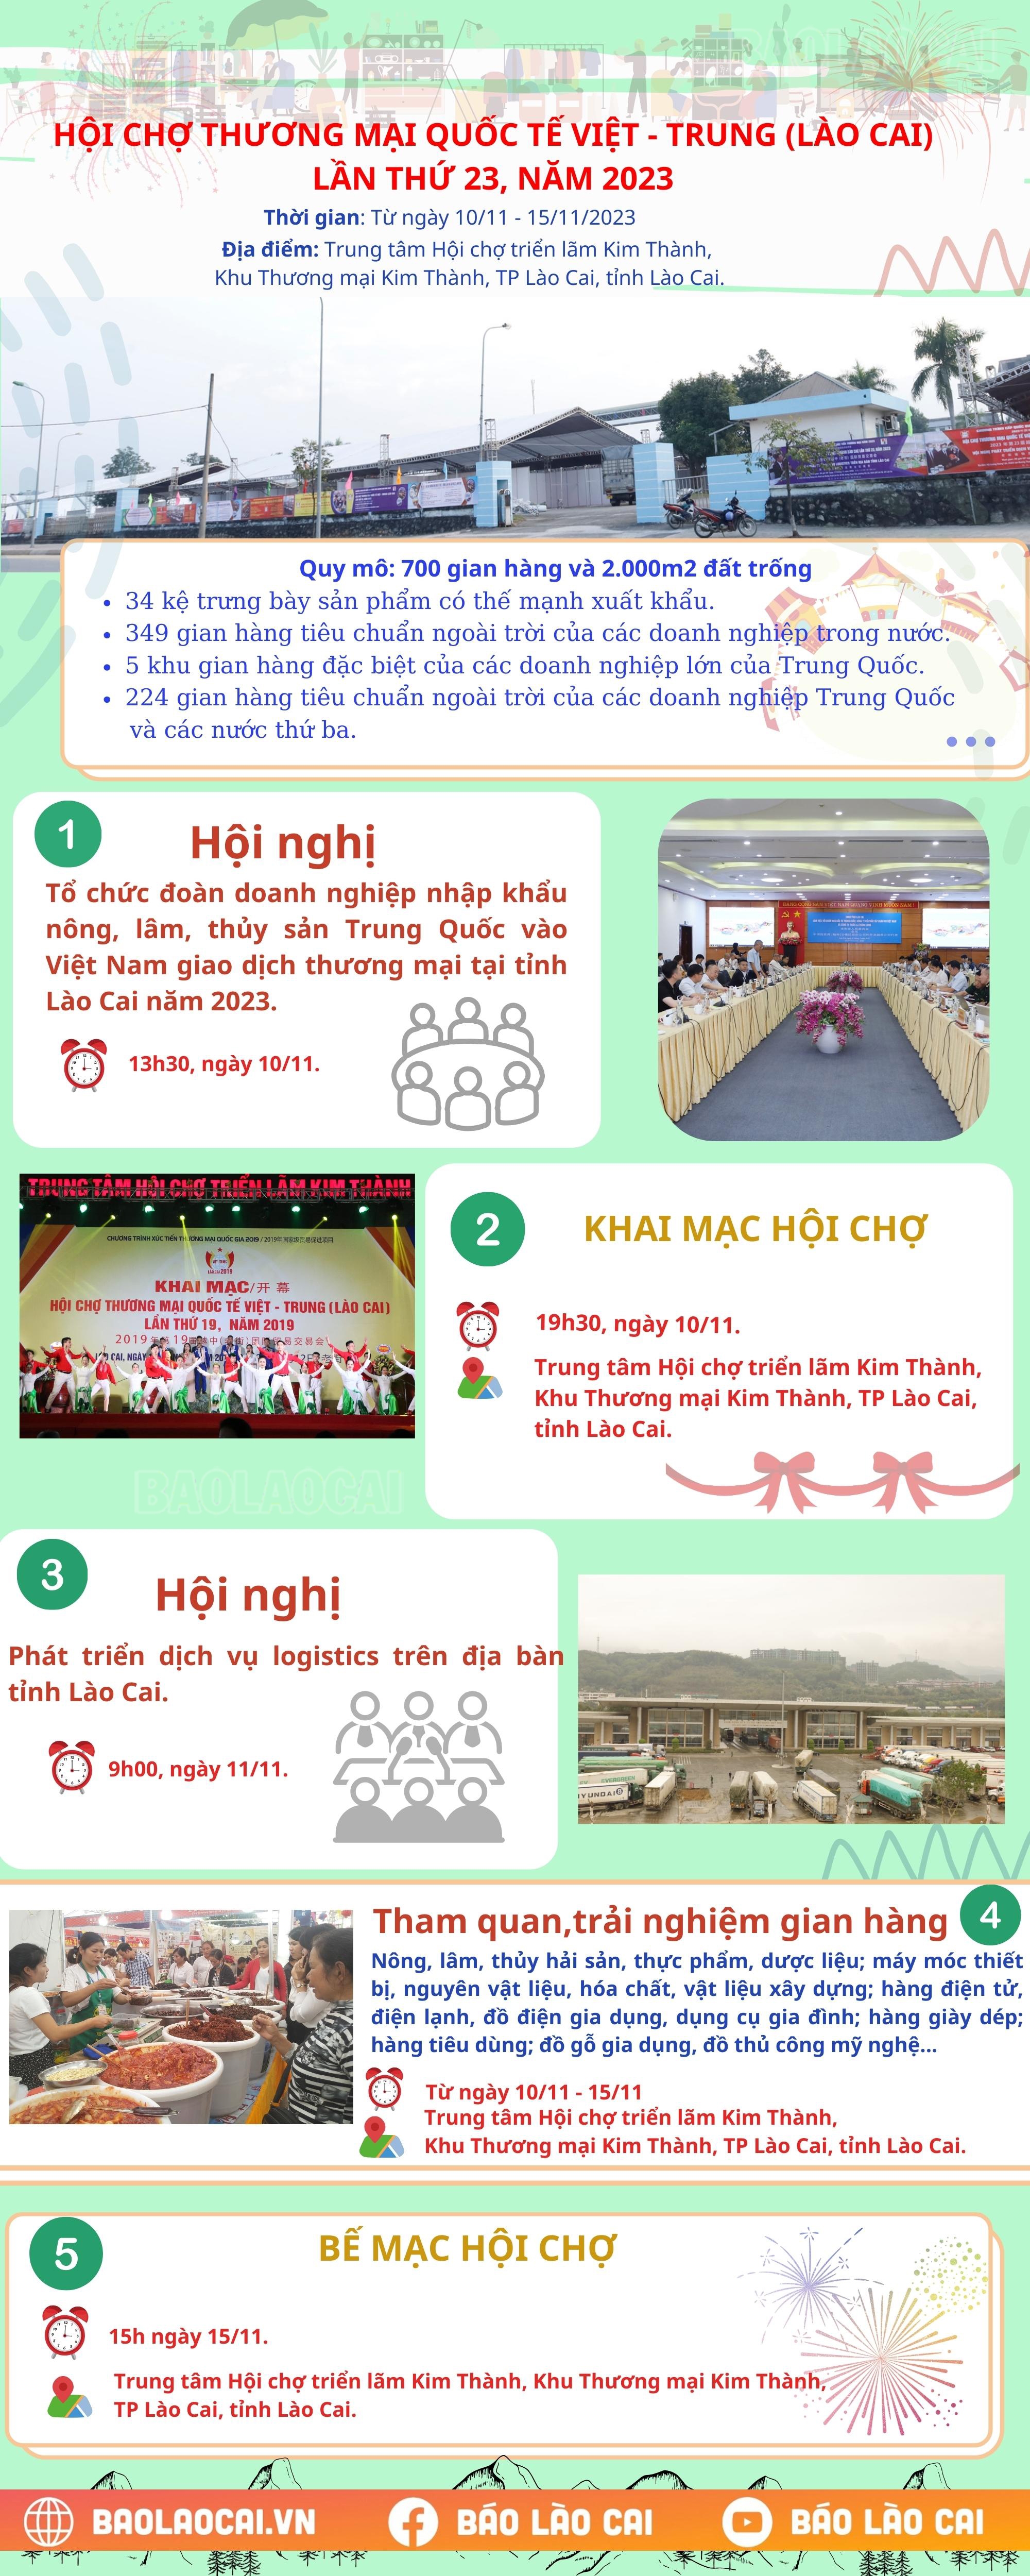 Nhiều hoạt động hấp dẫn sẽ diễn ra tại Hội chợ Thương mại quốc tế Việt - Trung (Lào Cai) lần thứ 23, năm 2023